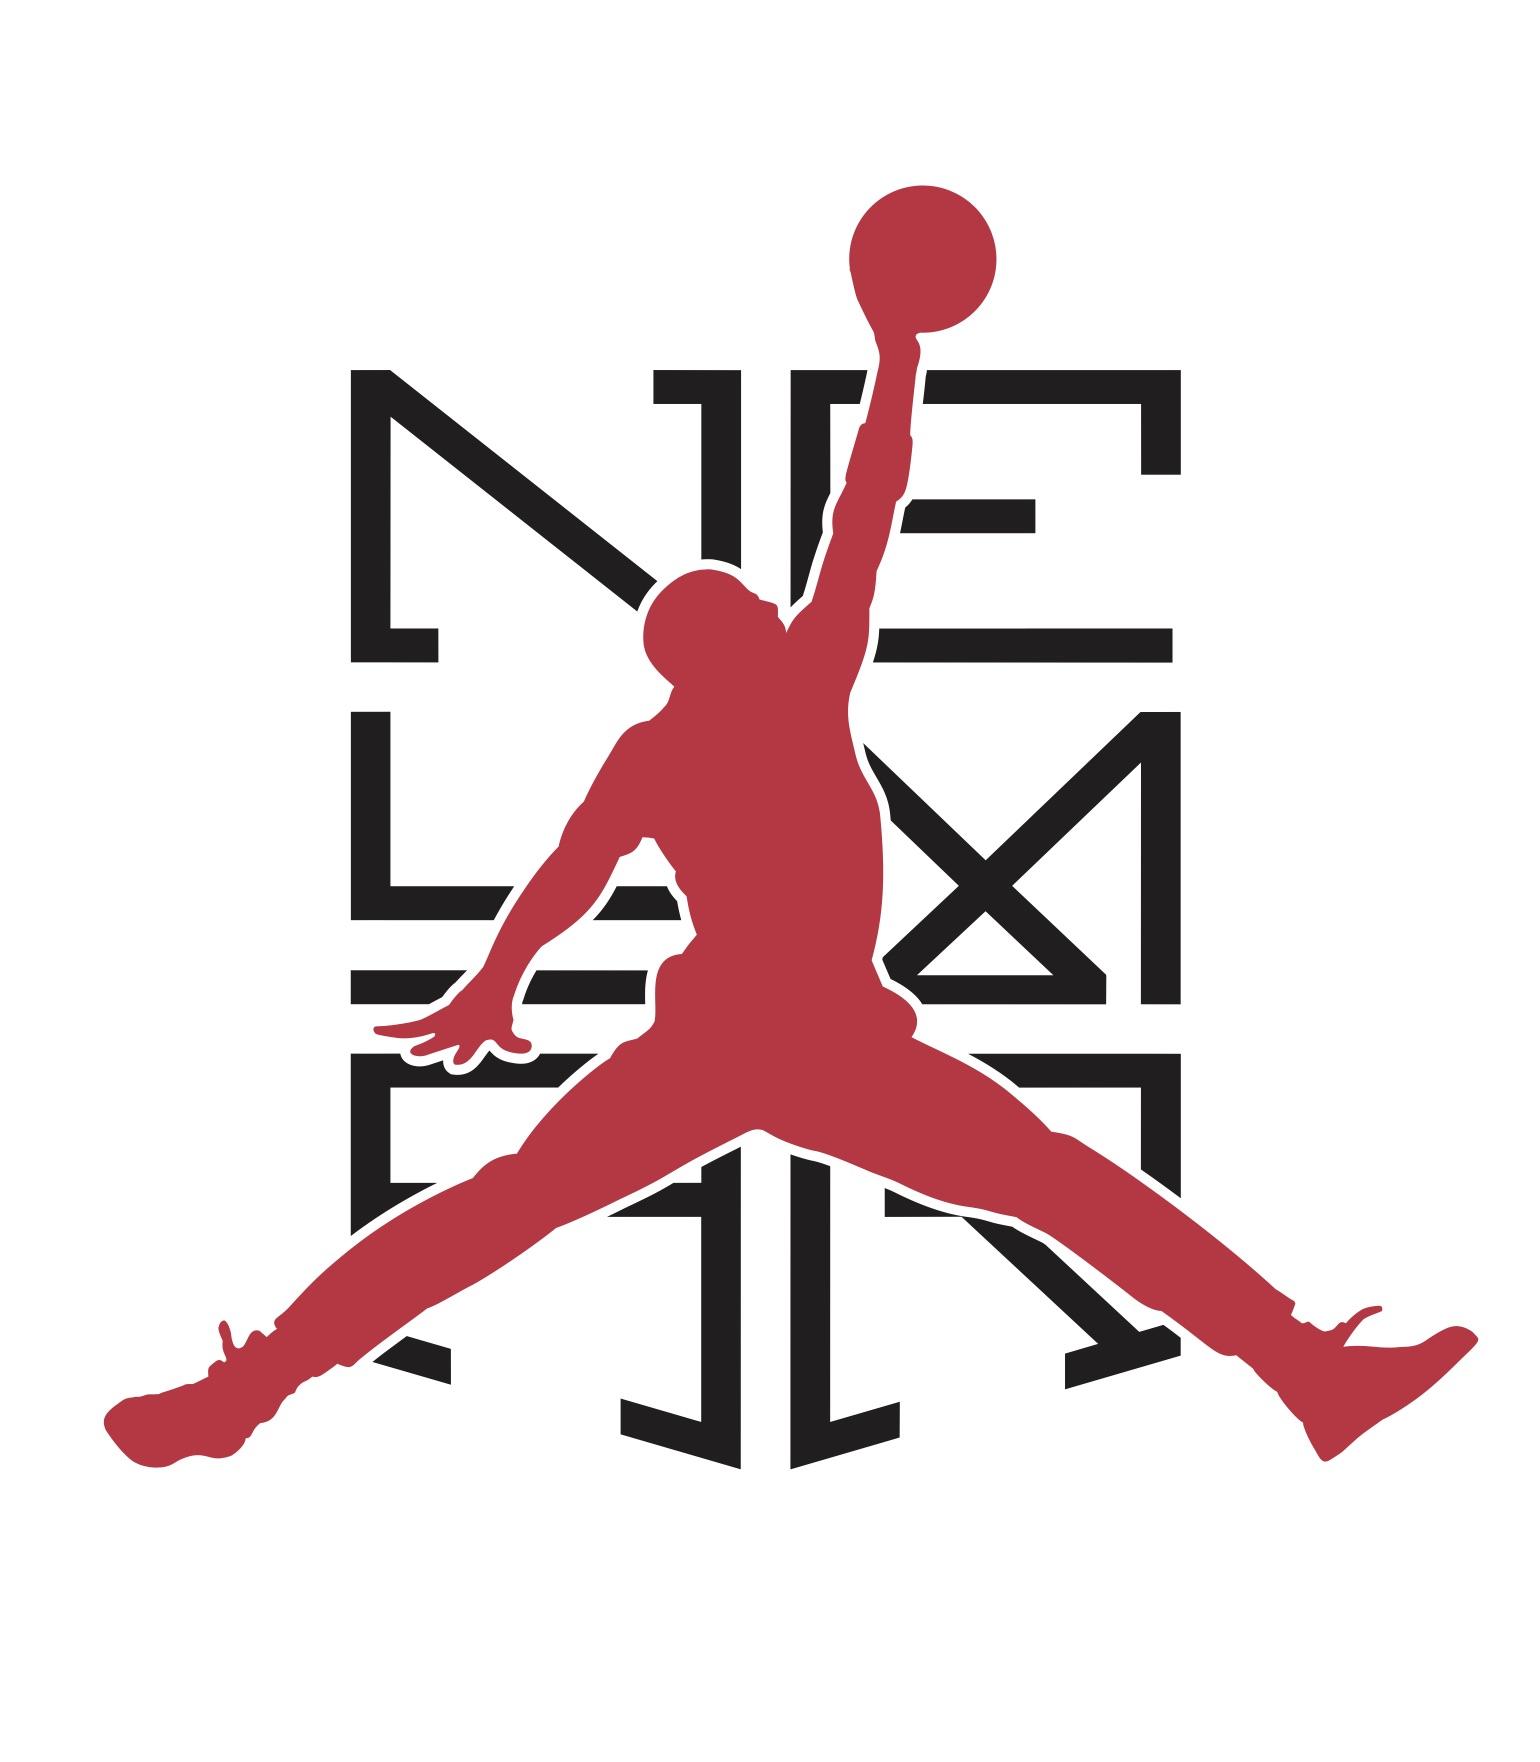 Nike Air Jordan Wallpapers - Top Free Nike Air Jordan Backgrounds ...